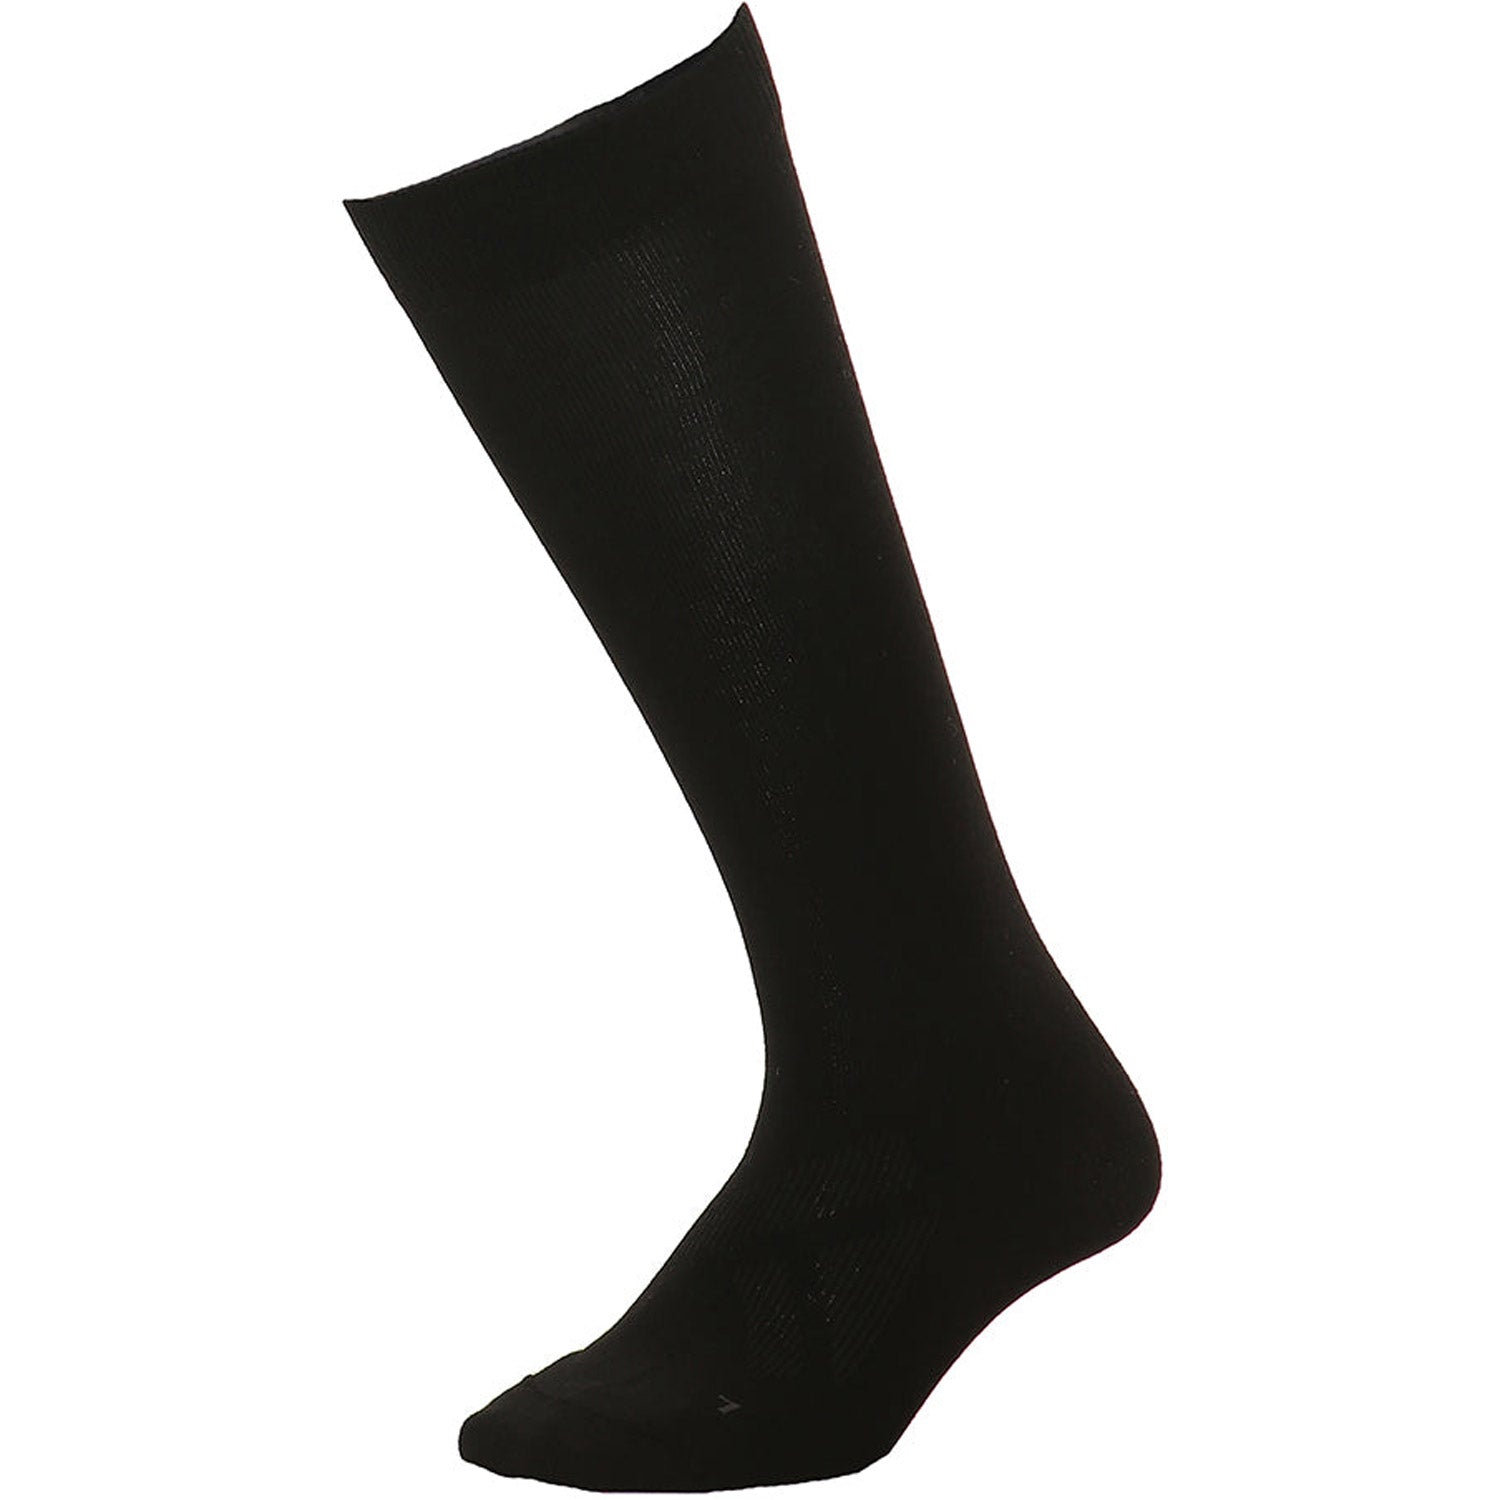 Merino Pro Fit II Australian Merino Wool Socks